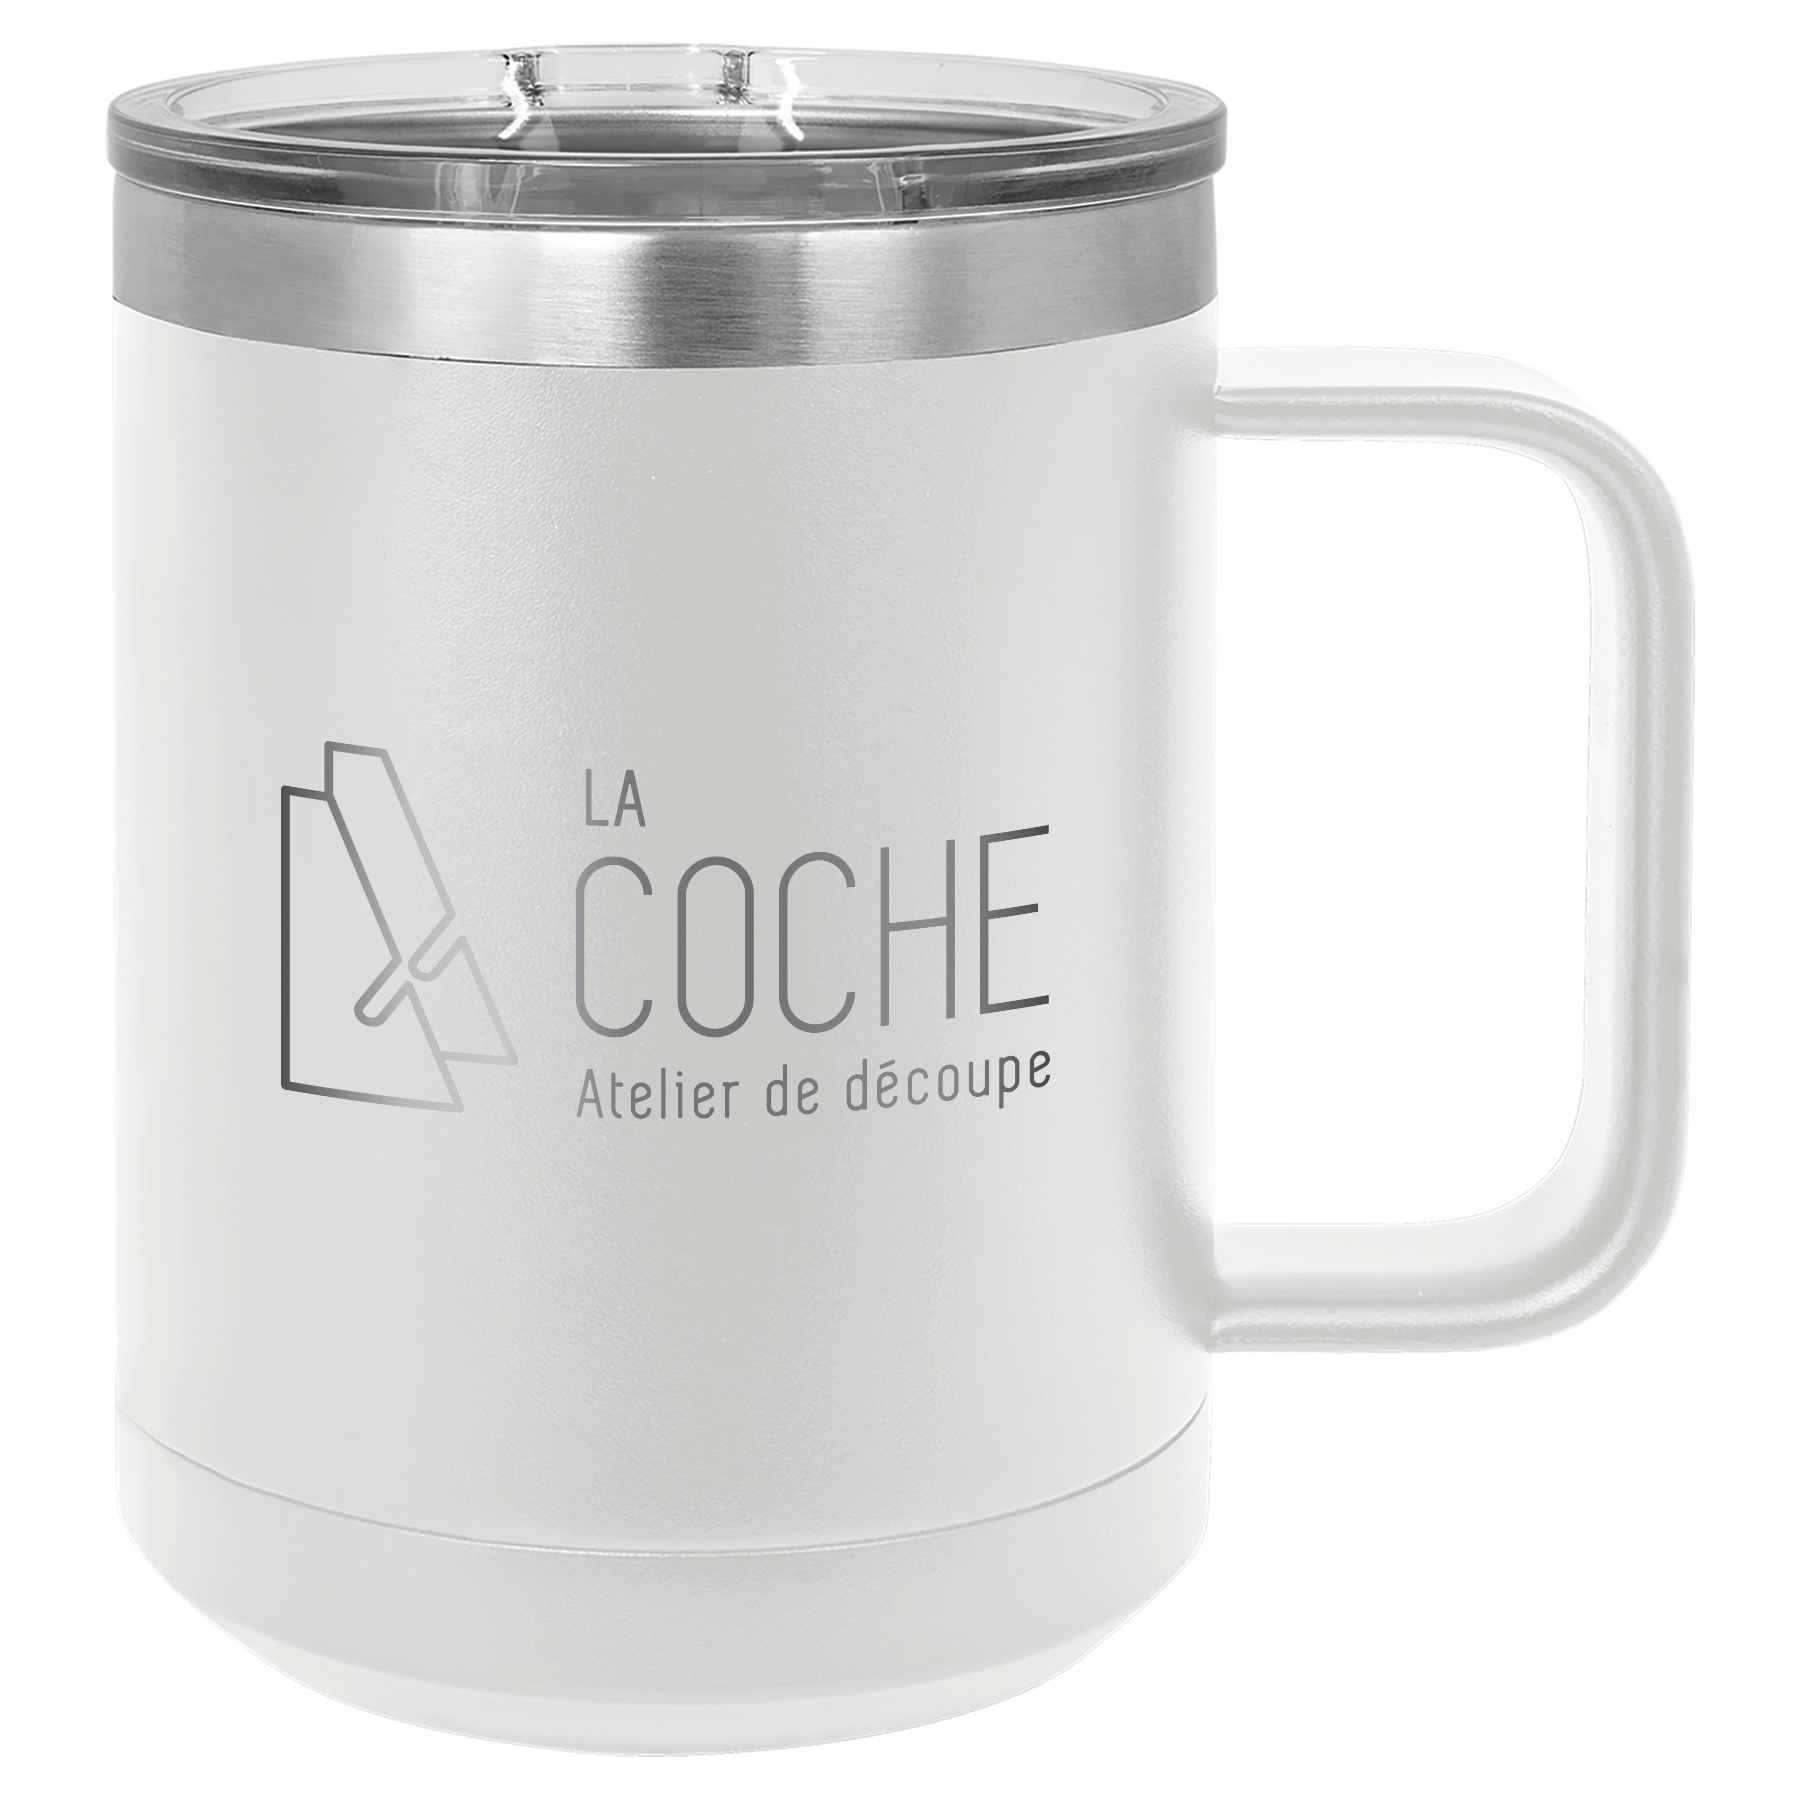 Tasse à café isotherme 12 oz/ 360ml Blanc - Brûlerie des Monts